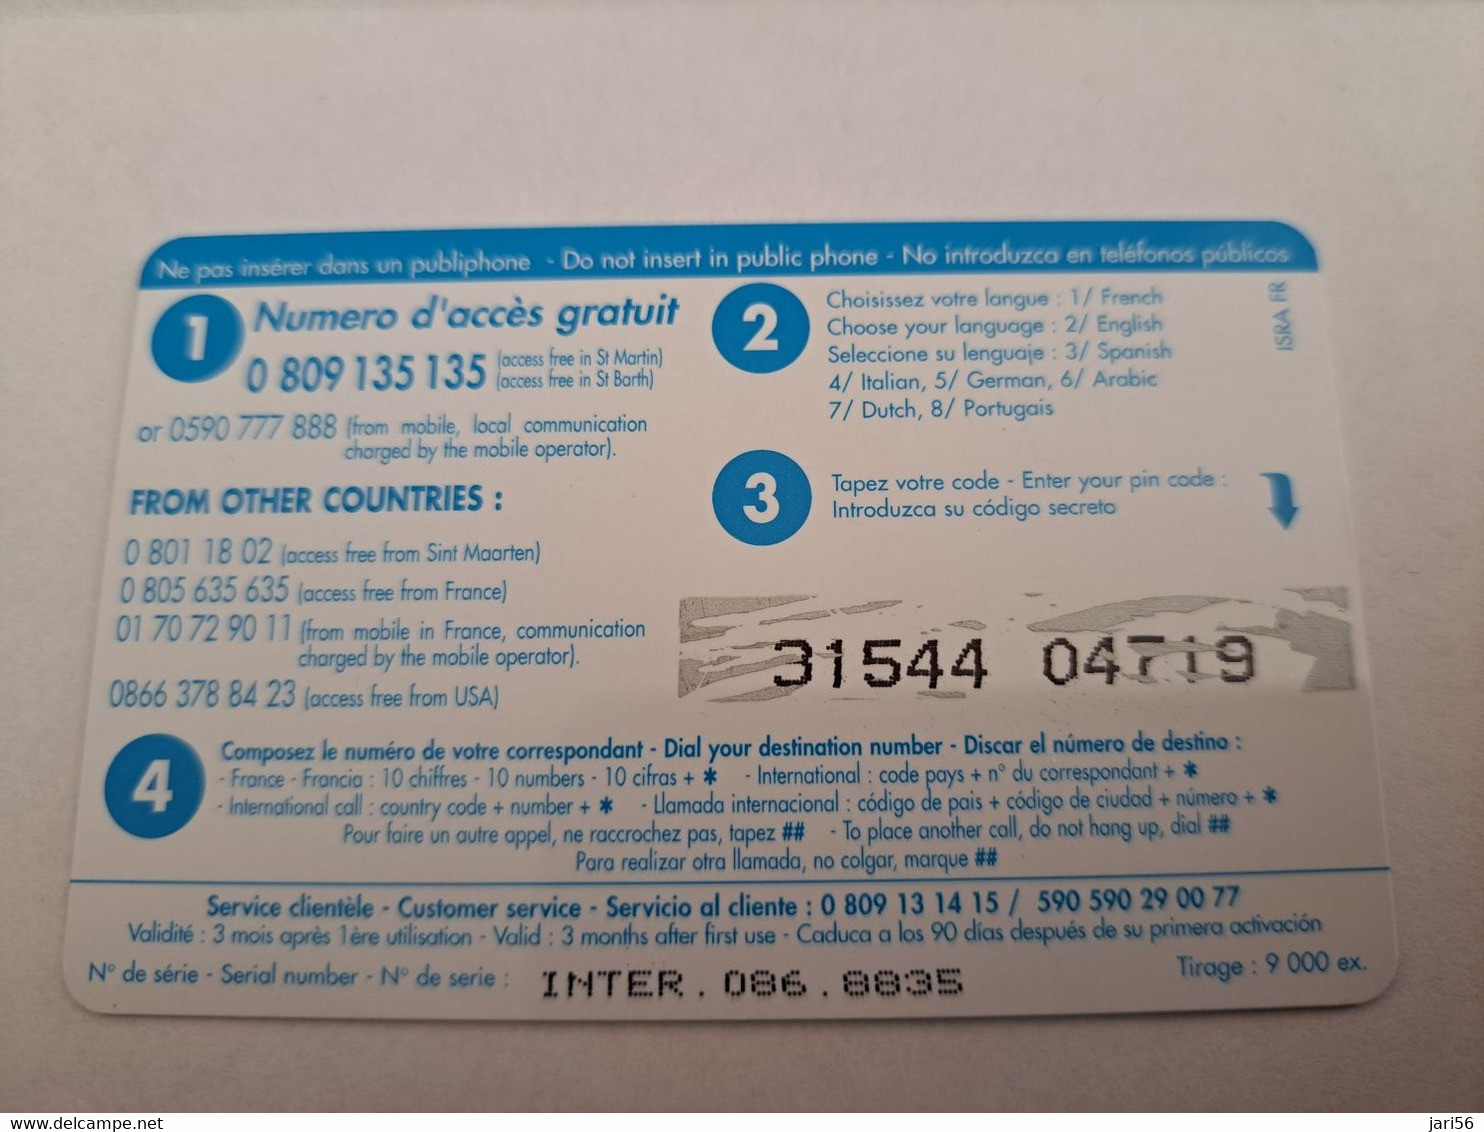 ST MARTIN / INTERCARD  8 EURO  CASE AGREMENT        NO 086   Fine Used Card    ** 10789 ** - Antillen (Französische)